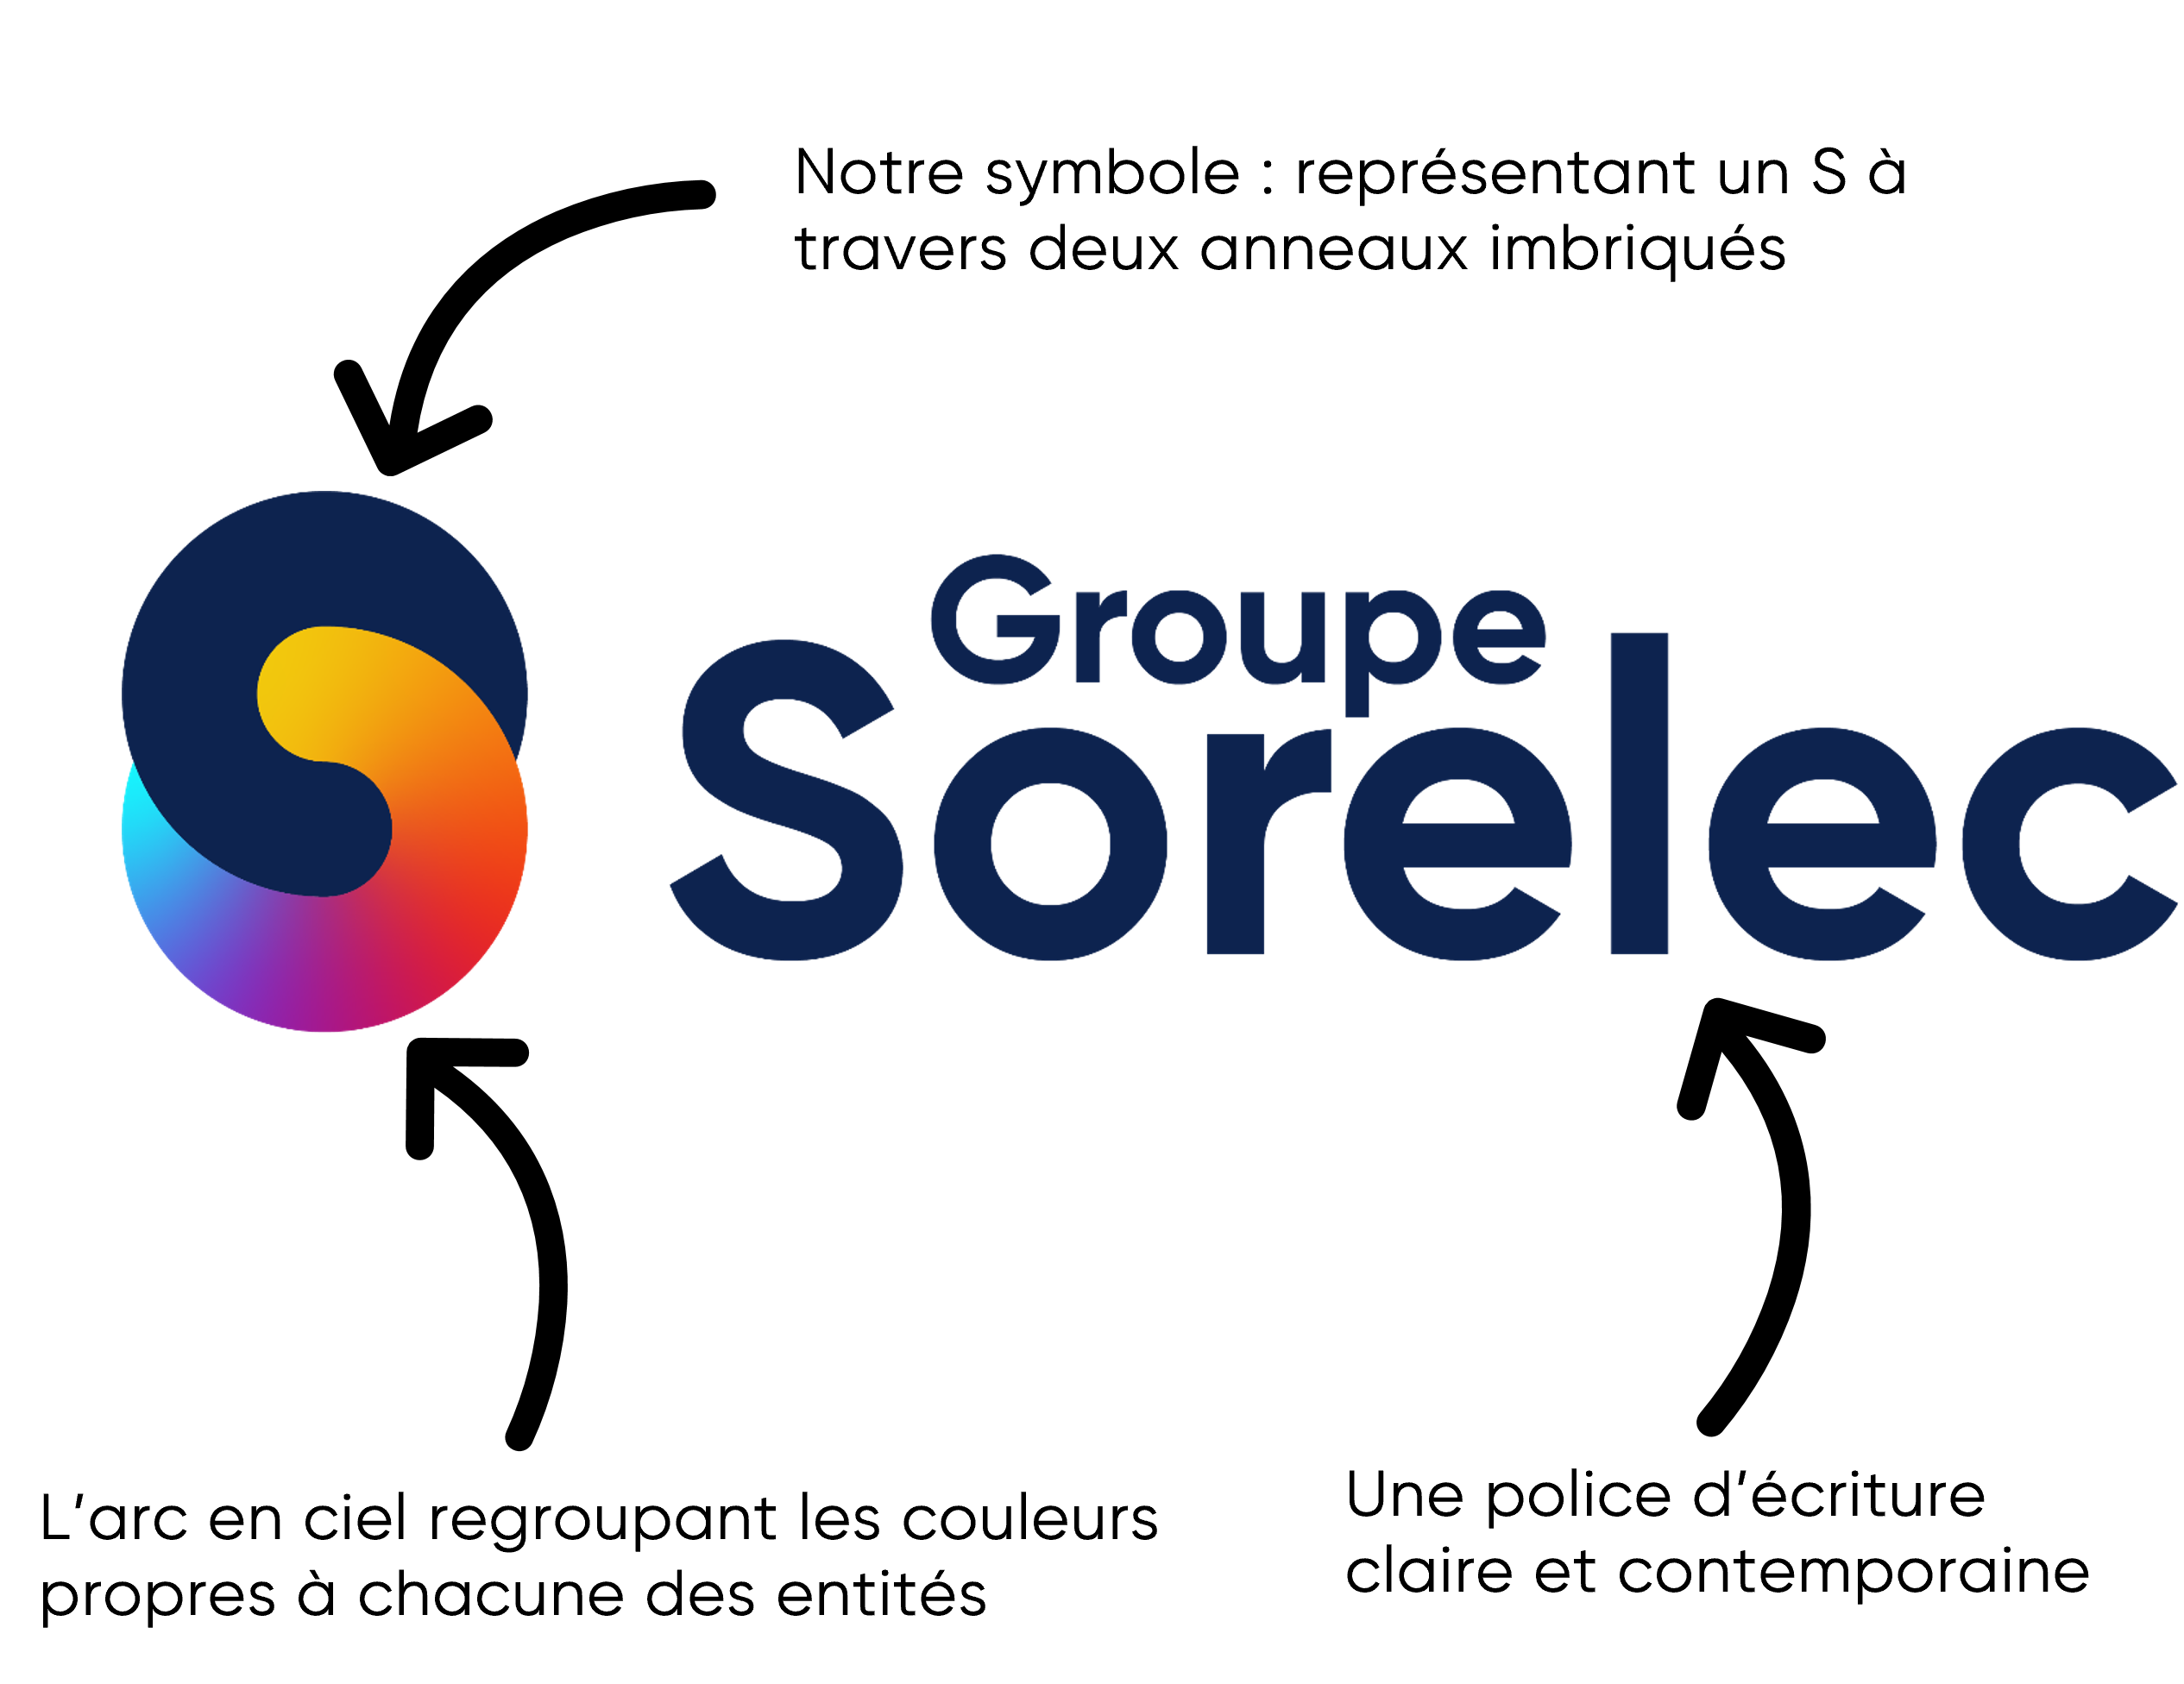 logo groupe